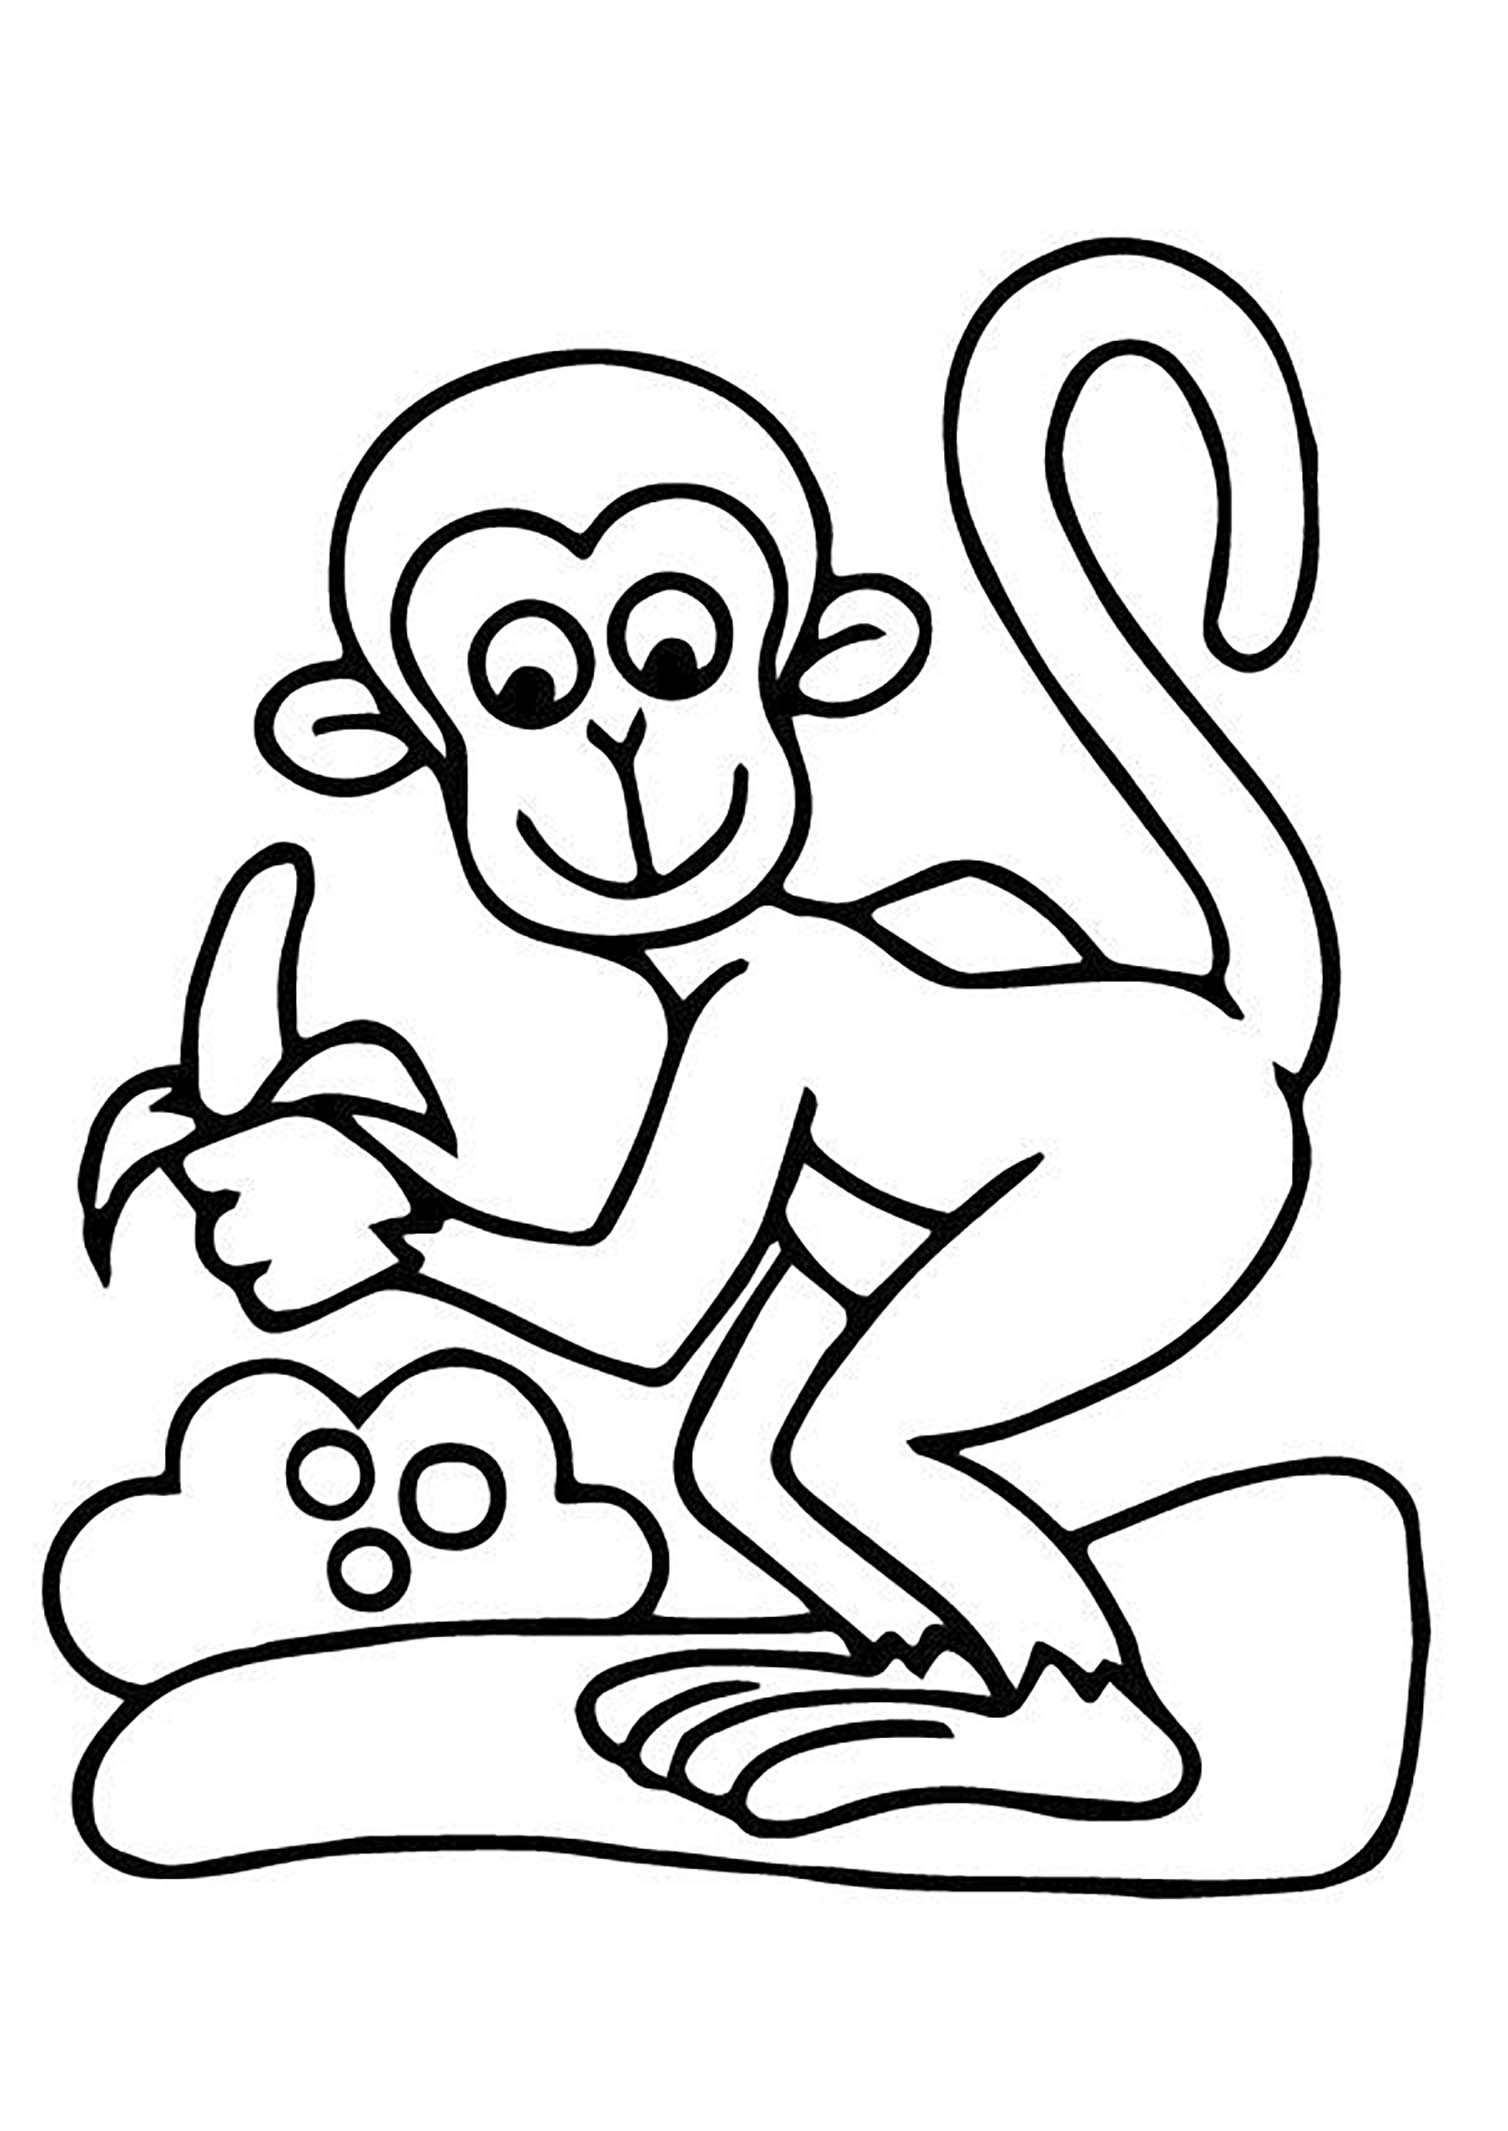 Desenho de macacos para colorir, fácil para as crianças